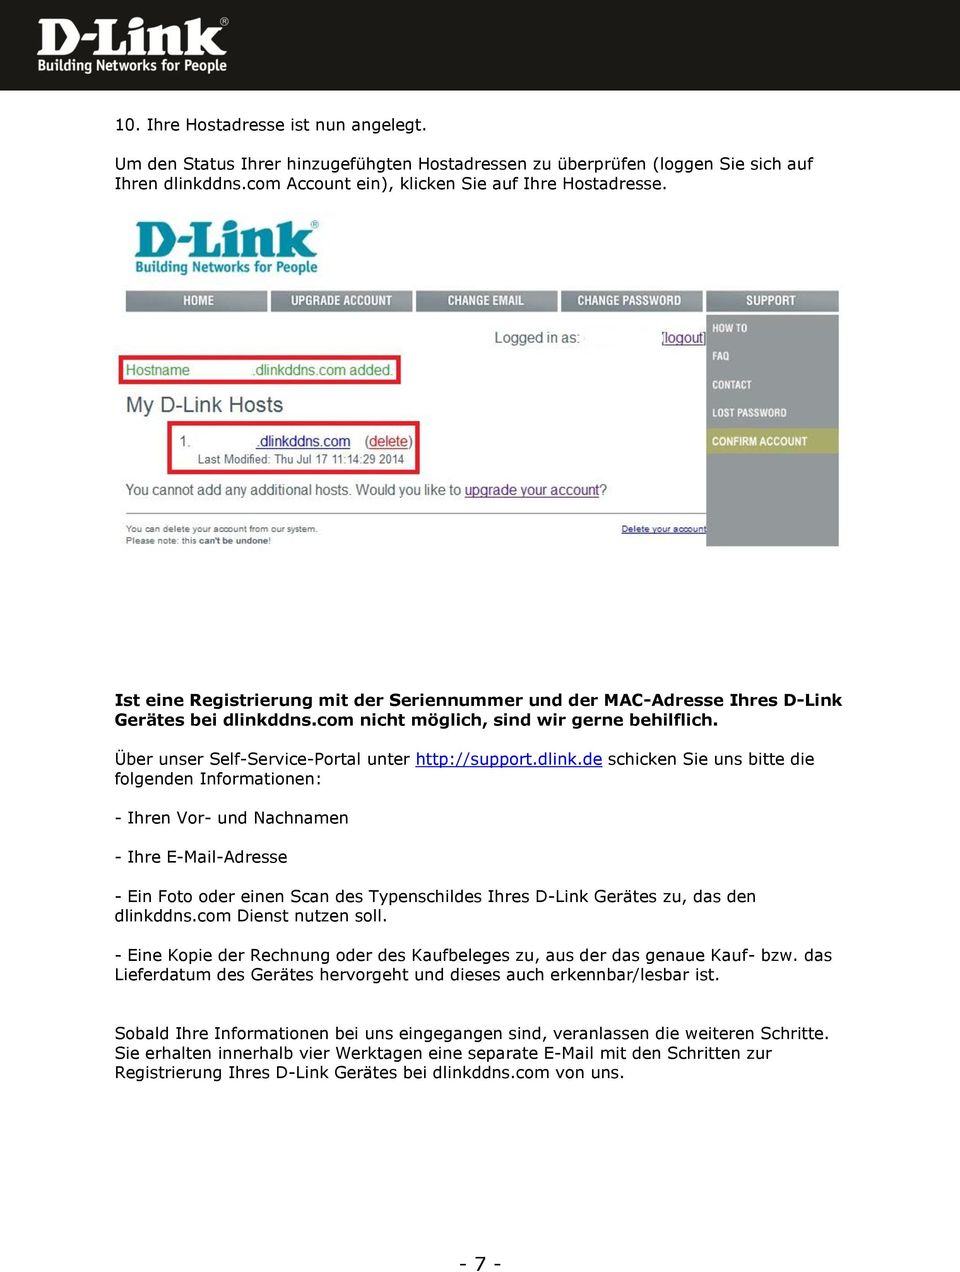 dlink.de schicken Sie uns bitte die folgenden Informationen: - Ihren Vor- und Nachnamen - Ihre E-Mail-Adresse - Ein Foto oder einen Scan des Typenschildes Ihres D-Link Gerätes zu, das den dlinkddns.